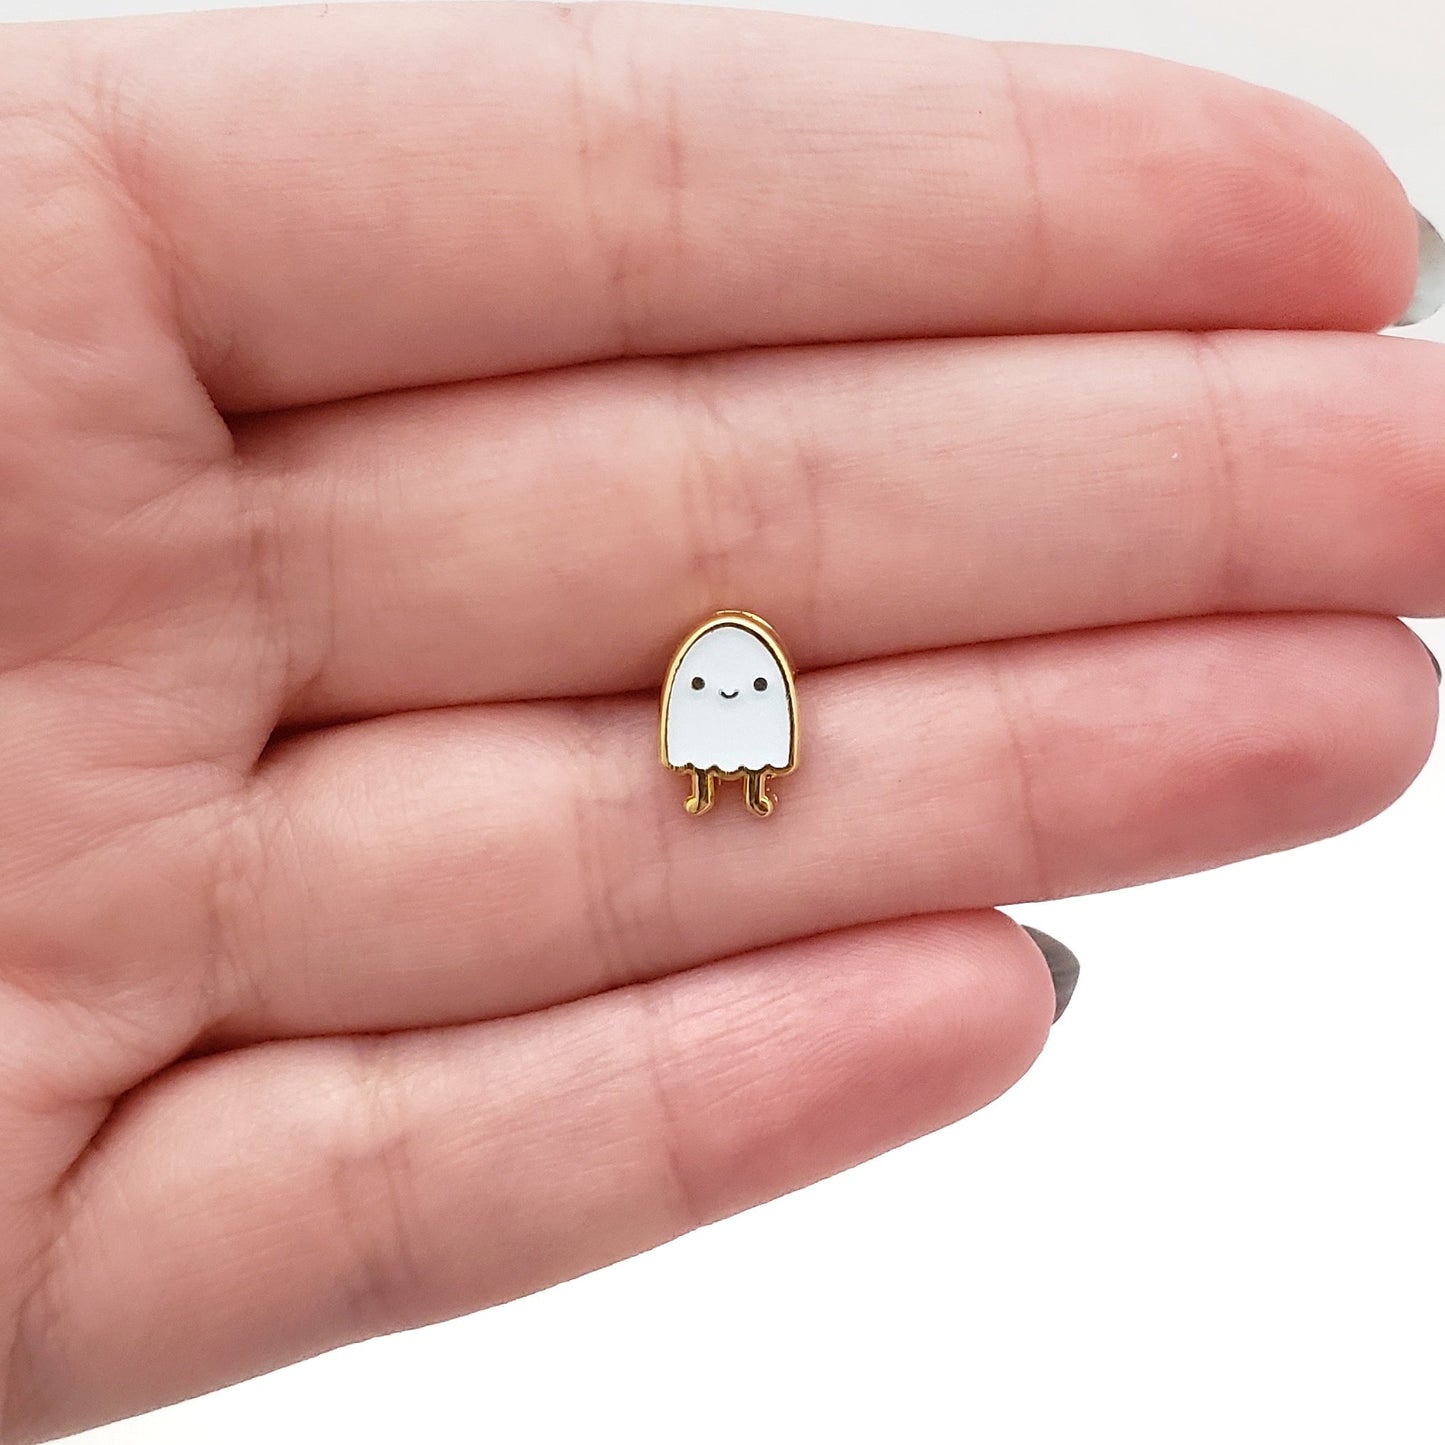 Glow Ghost enamel mini pin